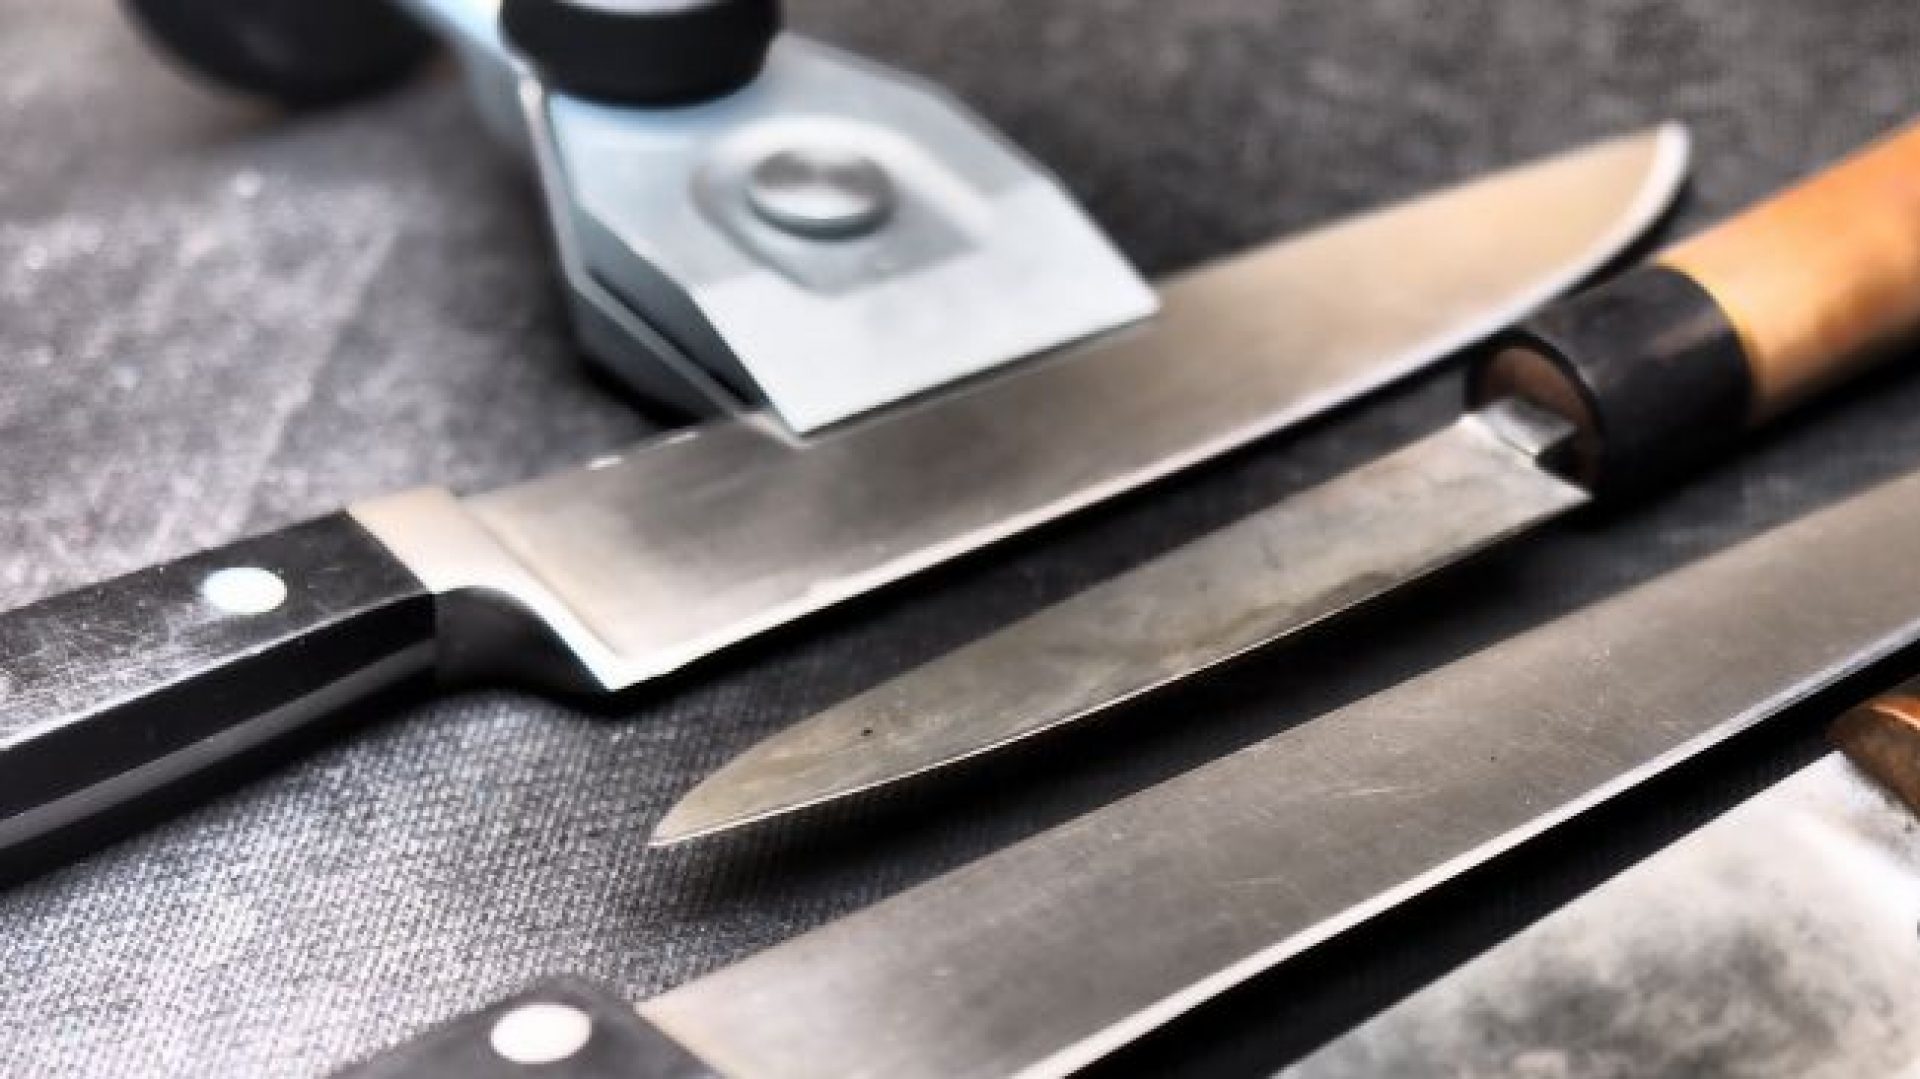 Messer schleifen lassen - Home - Messer-Scherenschliff